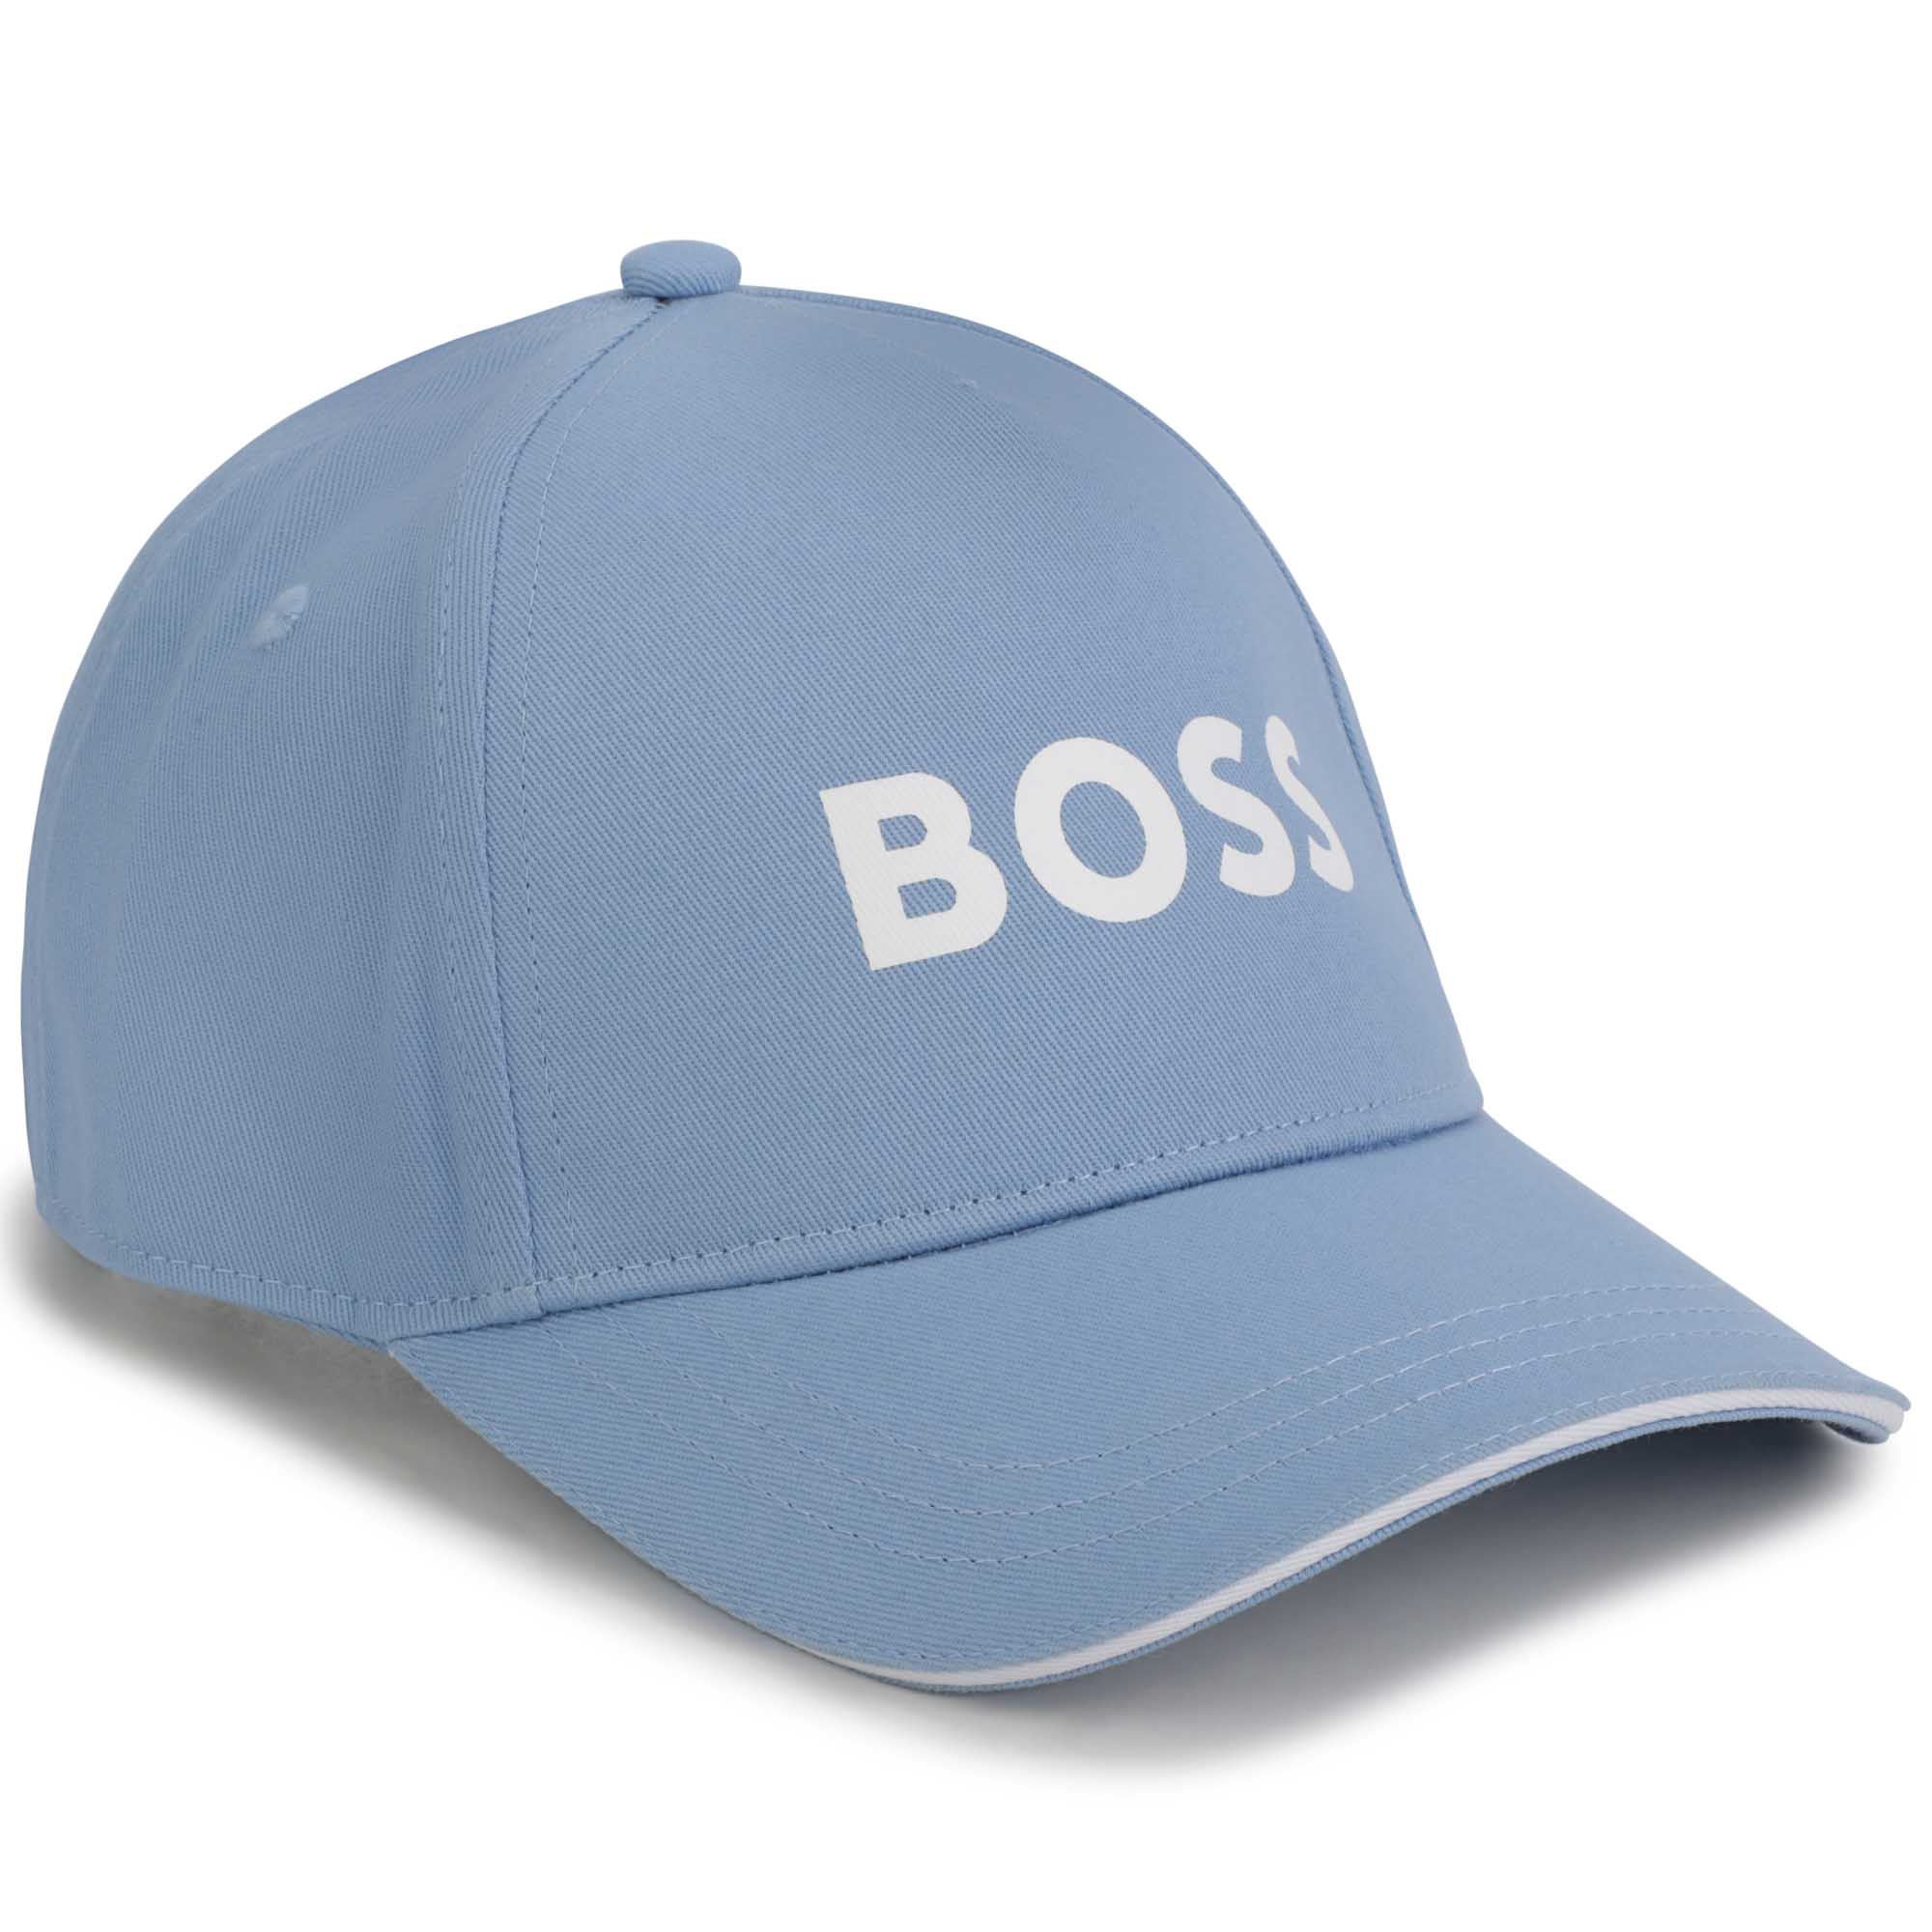 Boss boys blue cap